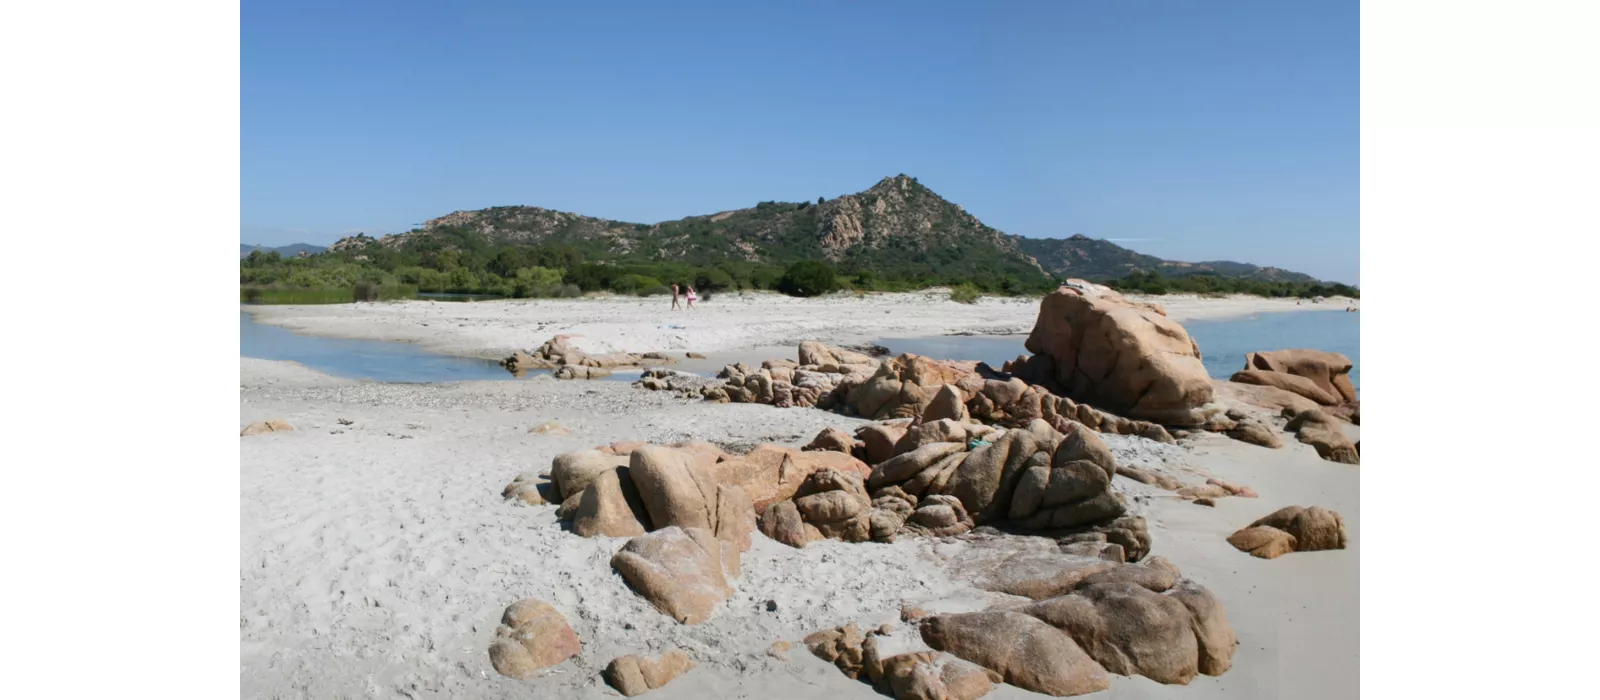 Alla scoperta delle Baronie: un angolo di Sardegna autentica incastonato tra mare e montagna